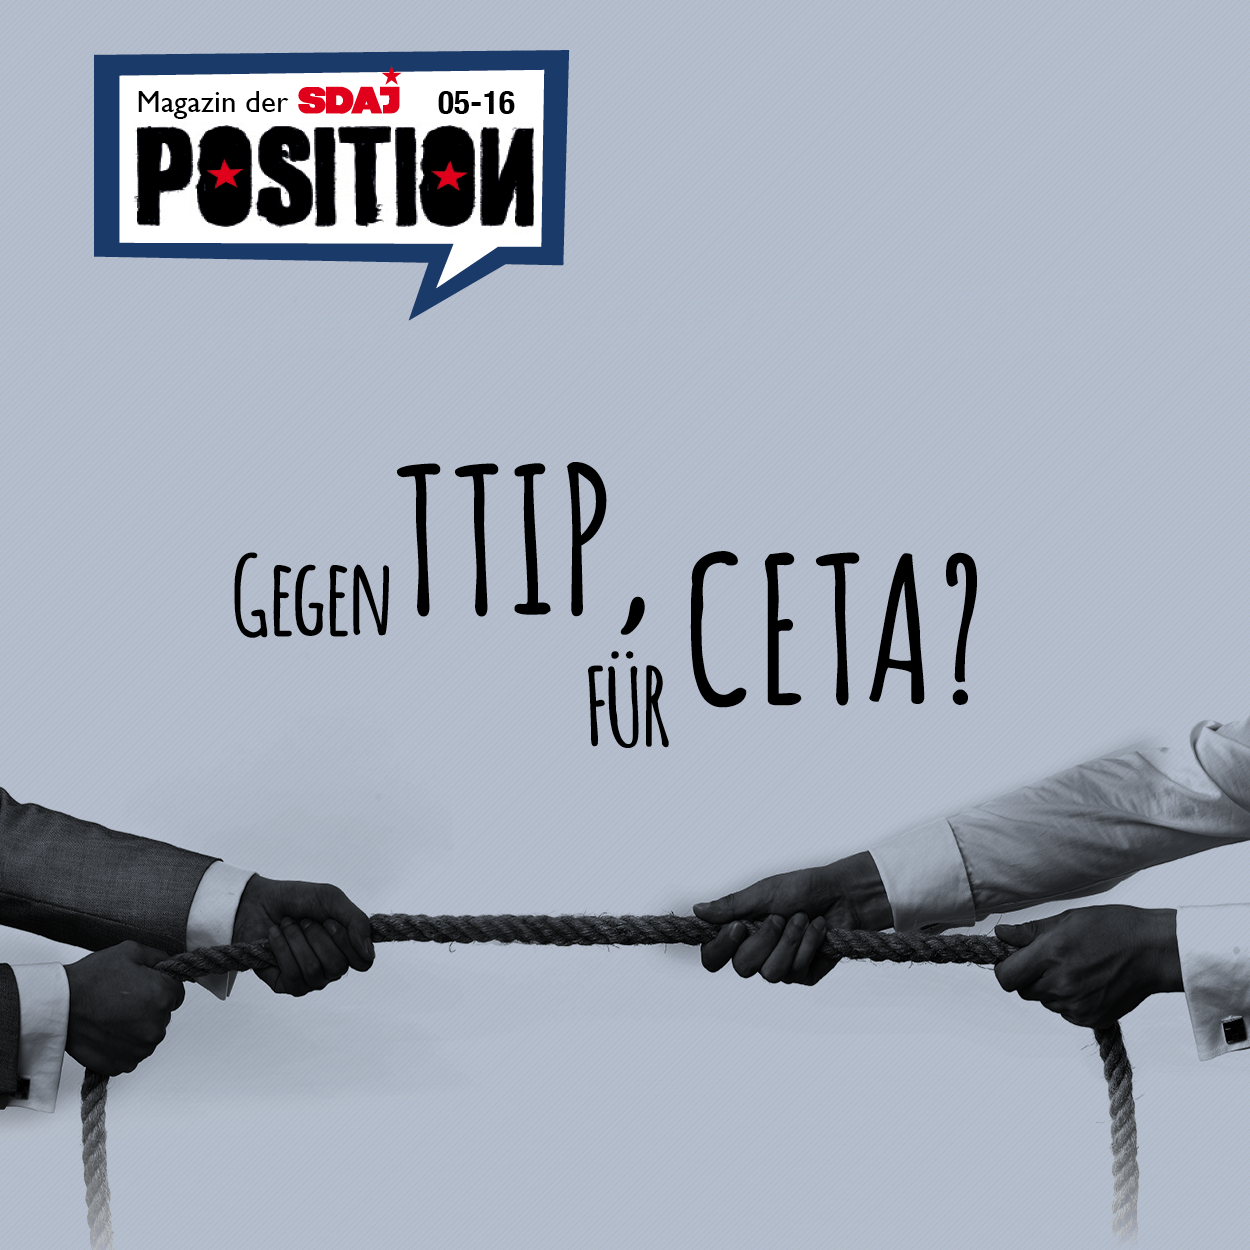 Gegen TTIP, für CETA?